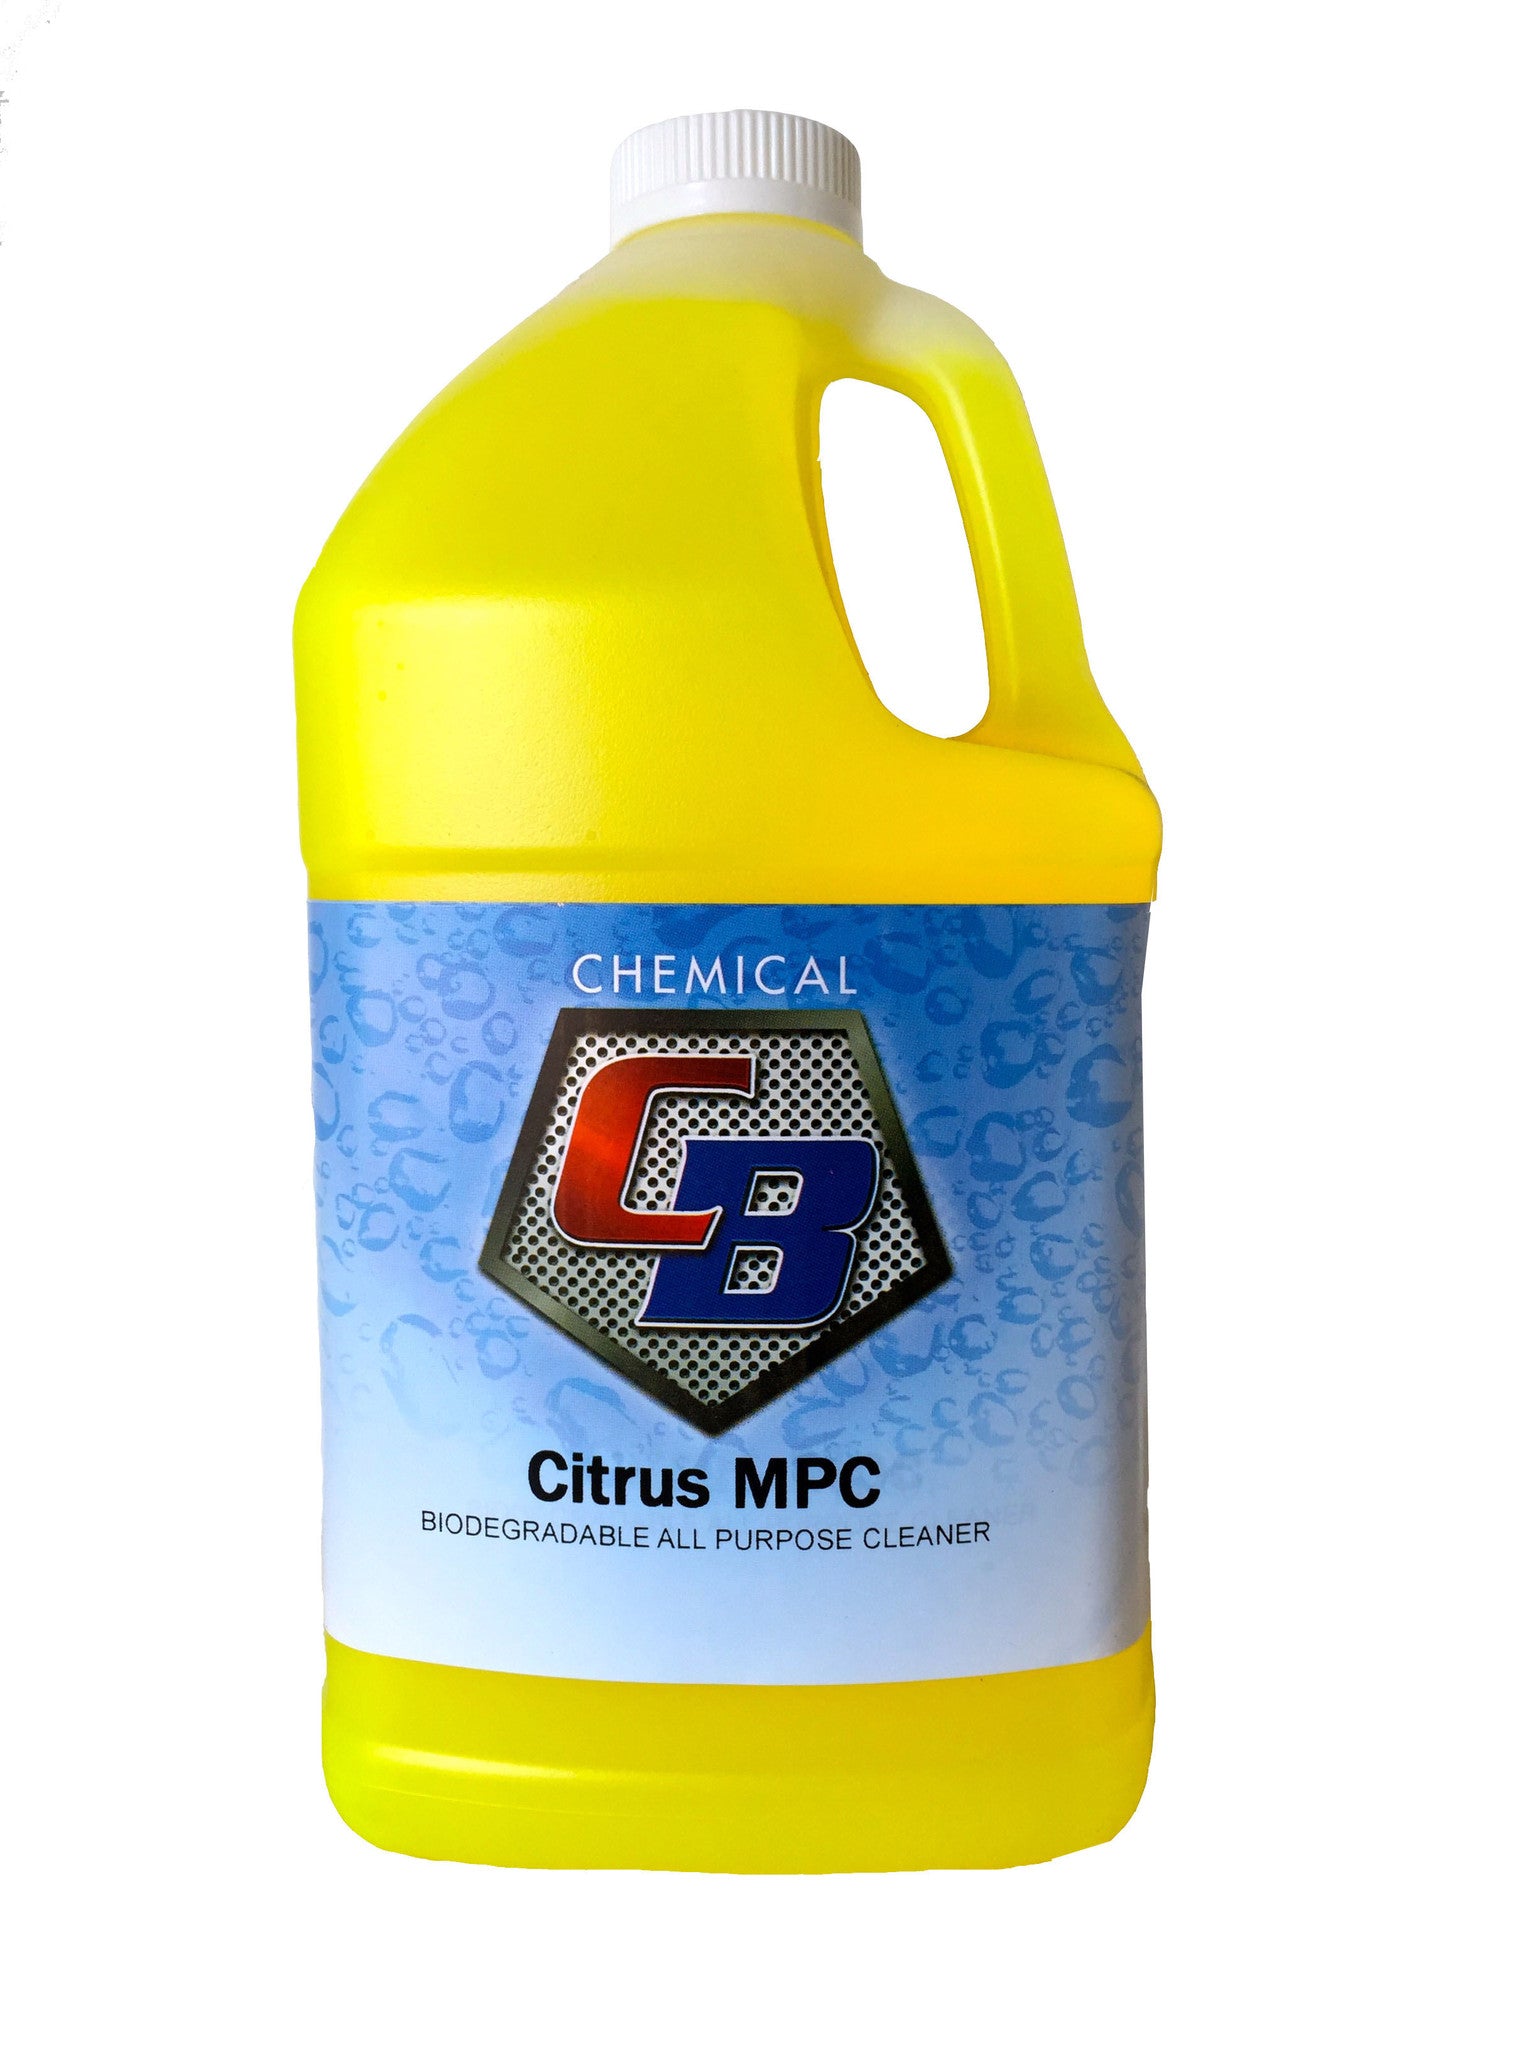 Citrus MPC - C & B Chemical, Inc